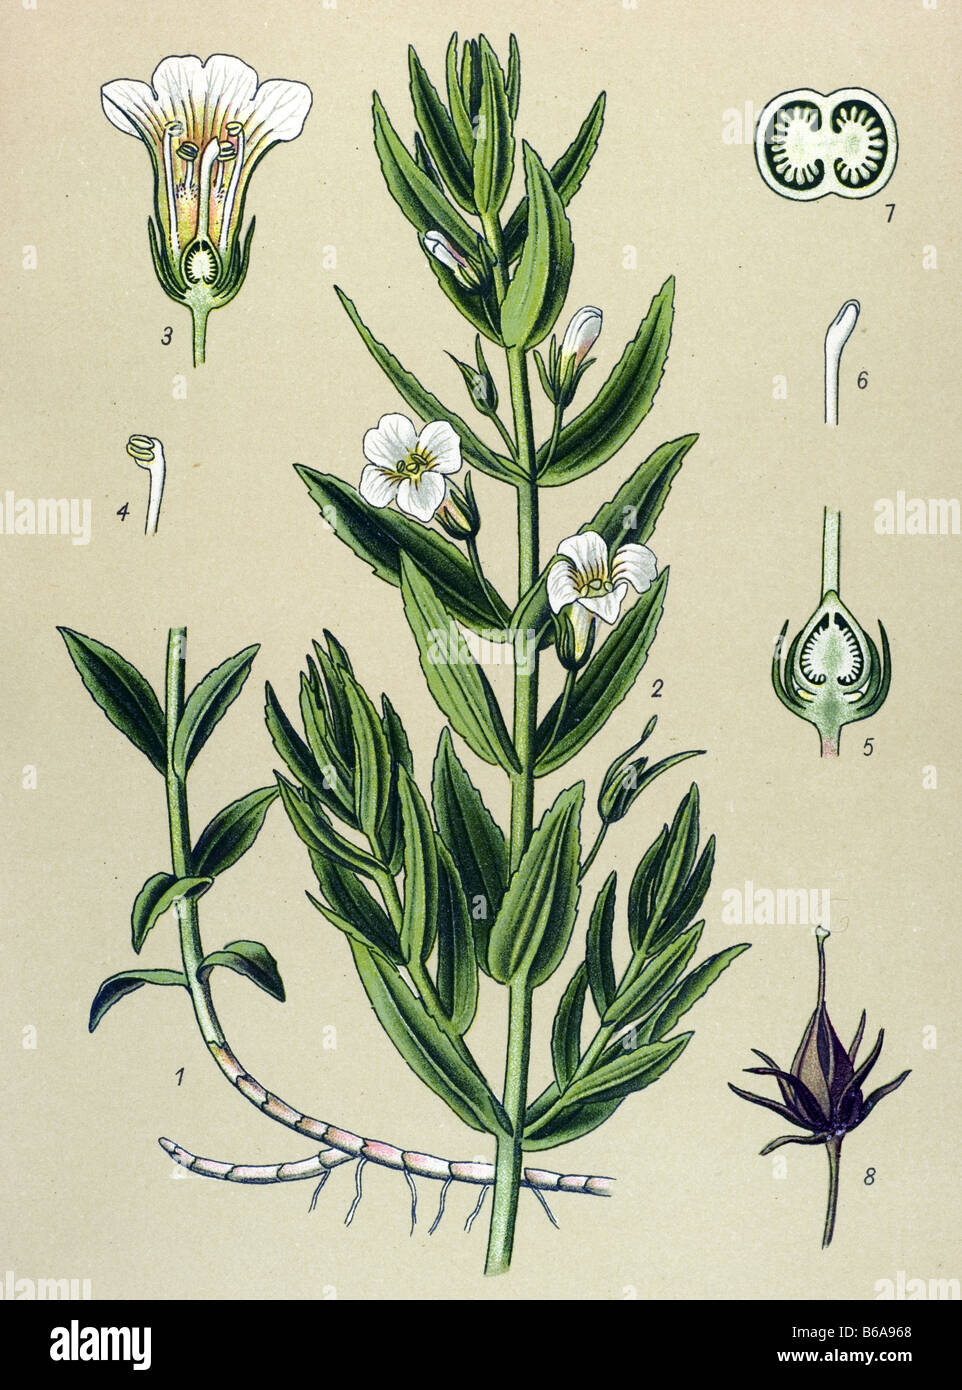 Hedgehyssop, Gratiola officinalis poisonous plants illustrations Stock Photo